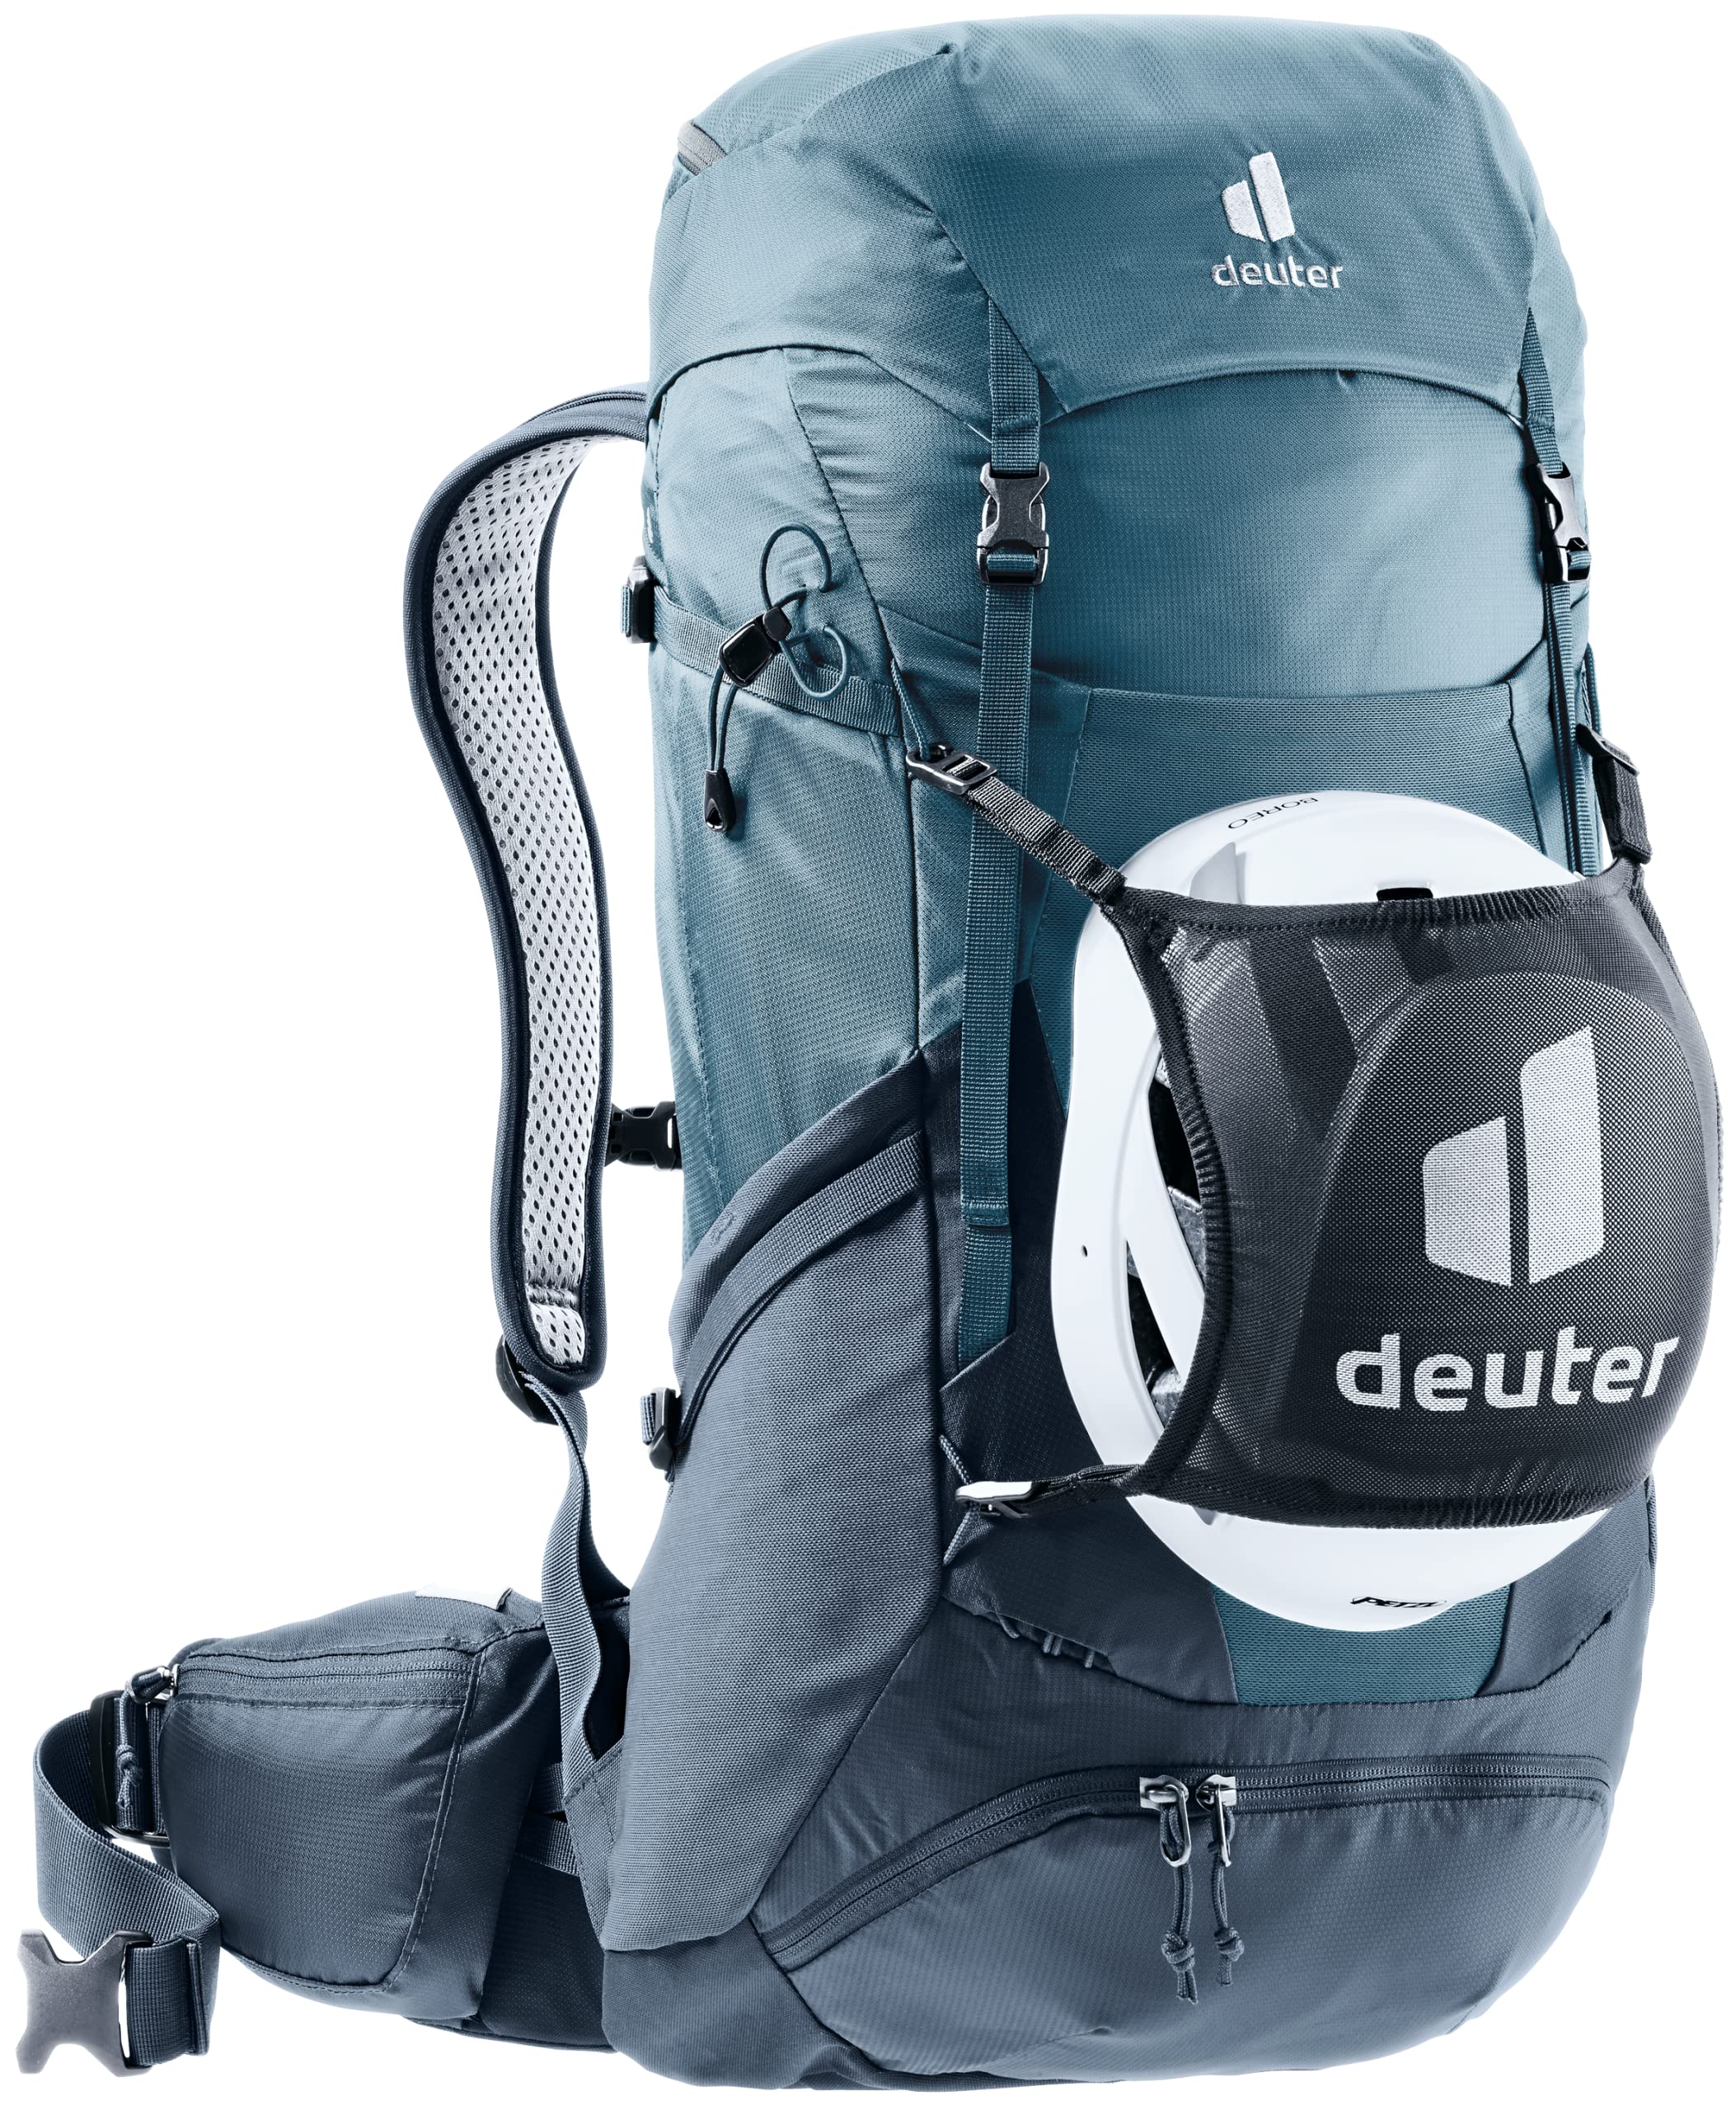 [ドイター] 登山用バックパック フューチュラプロ 36 アトランティック×インク D3401121-1374 2021年モデル メンズ 36L